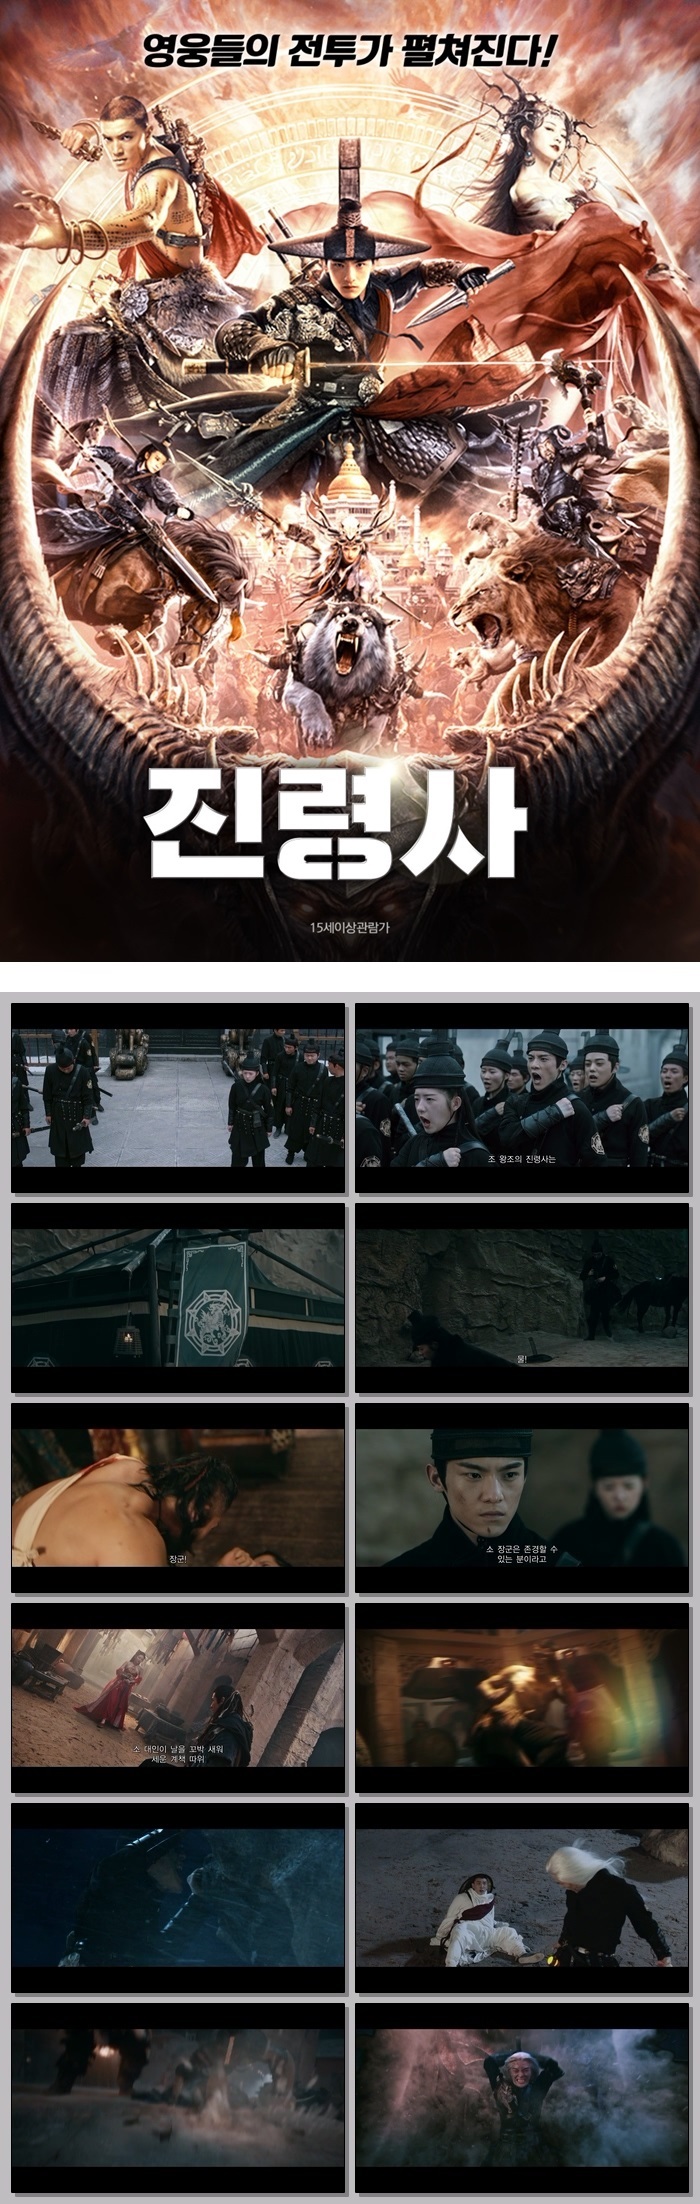 [진령사] HD 중국 판타지 액션의 끝 영웅들의 집결이 시작된다